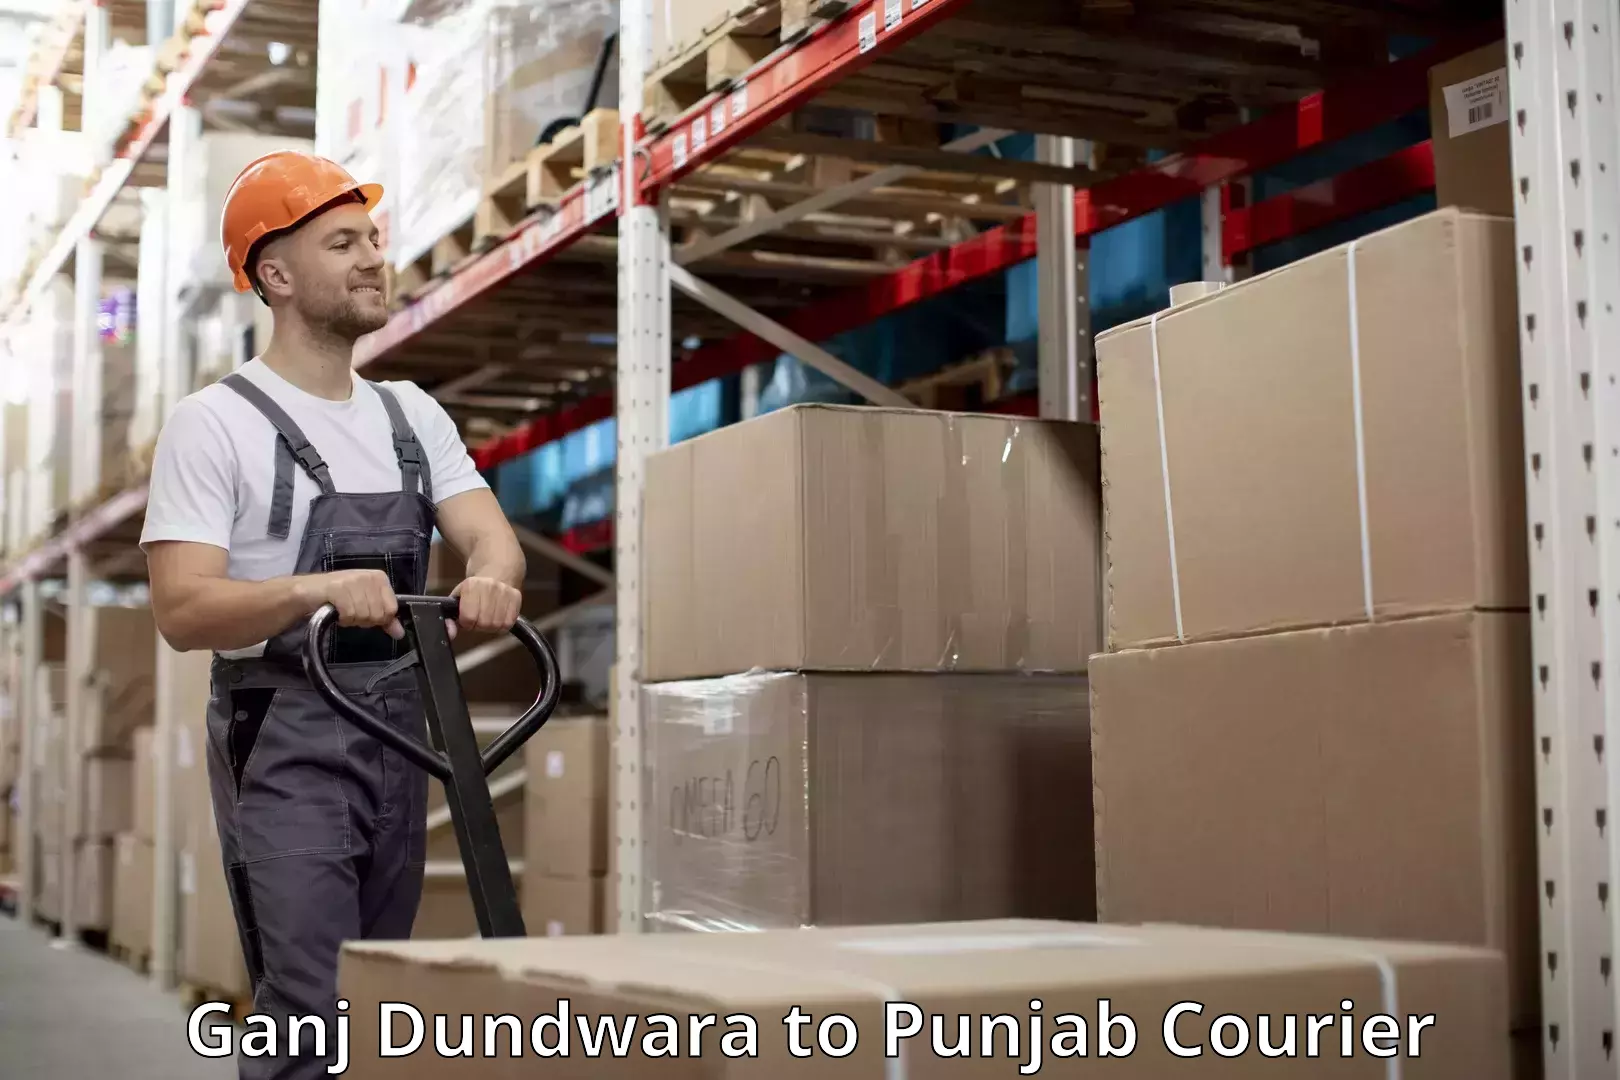 Luggage shipping service in Ganj Dundwara to Punjab